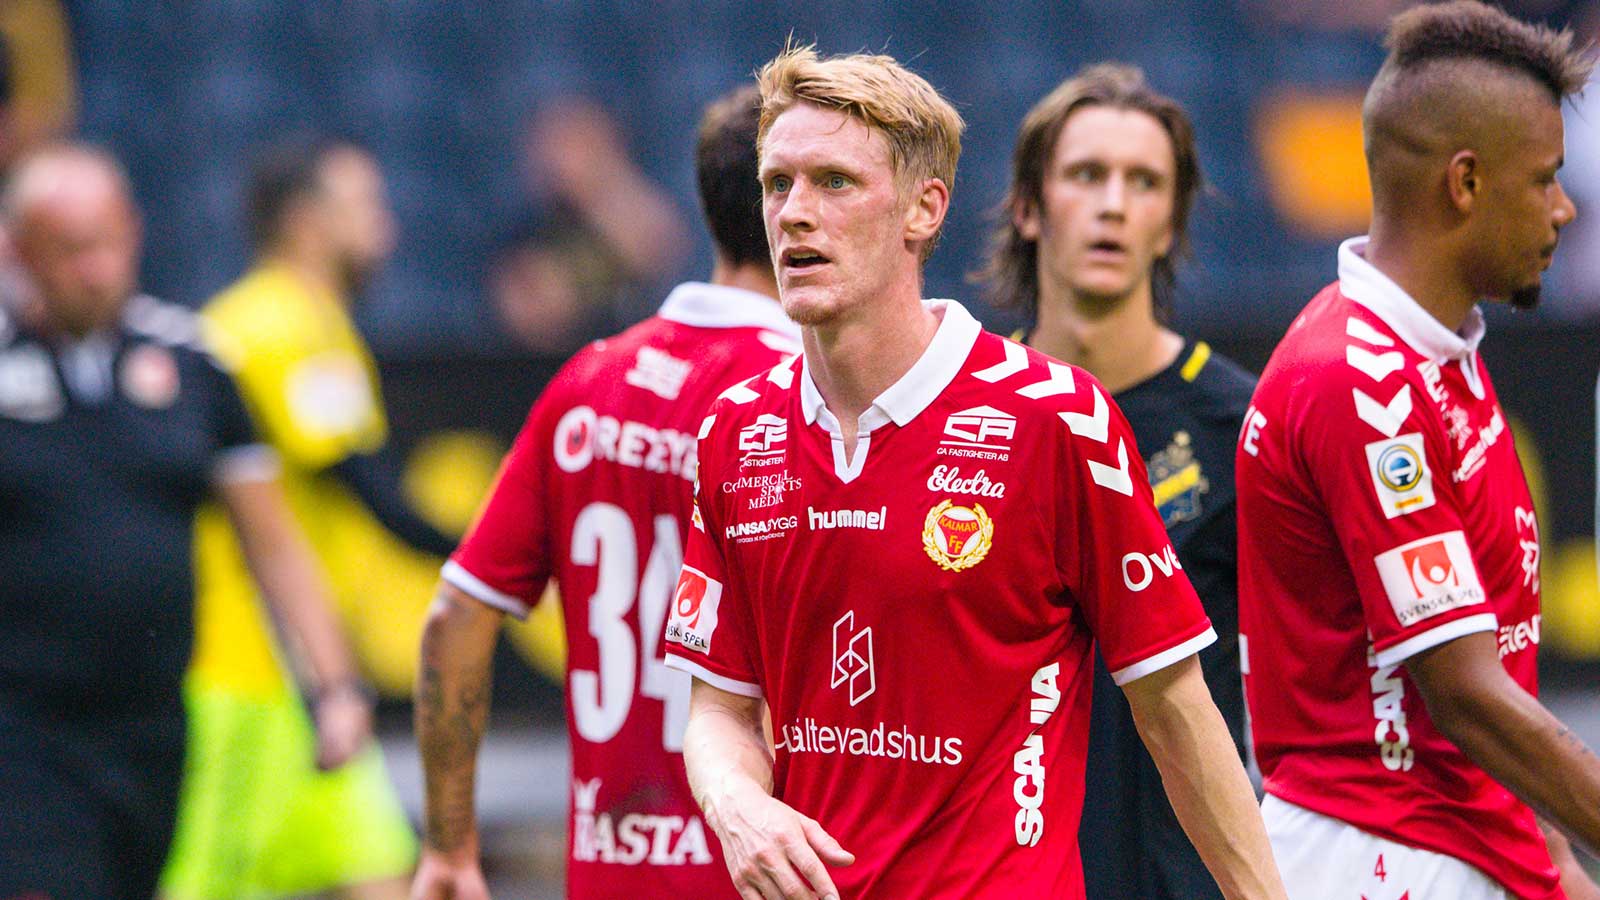 180729 Kalmars Rasmus Elm deppar efter fotbollsmatchen i Allsvenskan mellan AIK och Kalmar den 29 juli 2018 i Stockholm.